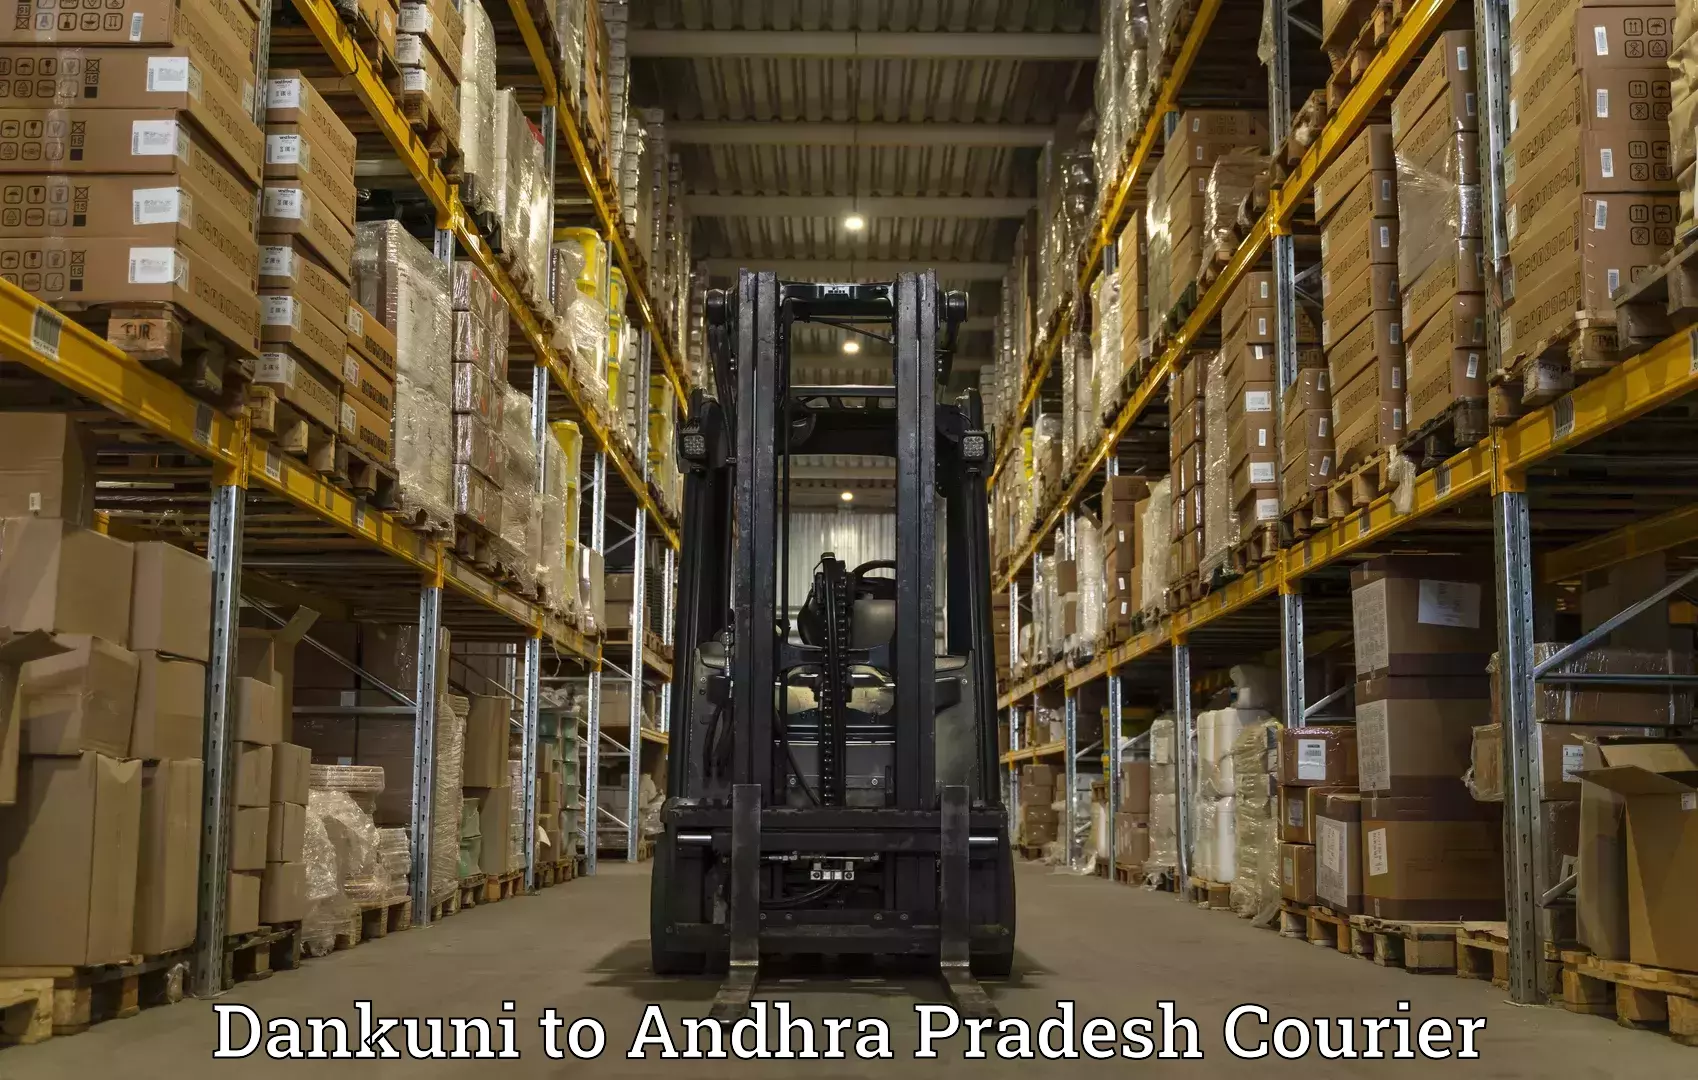 Logistics service provider Dankuni to Andhra Pradesh